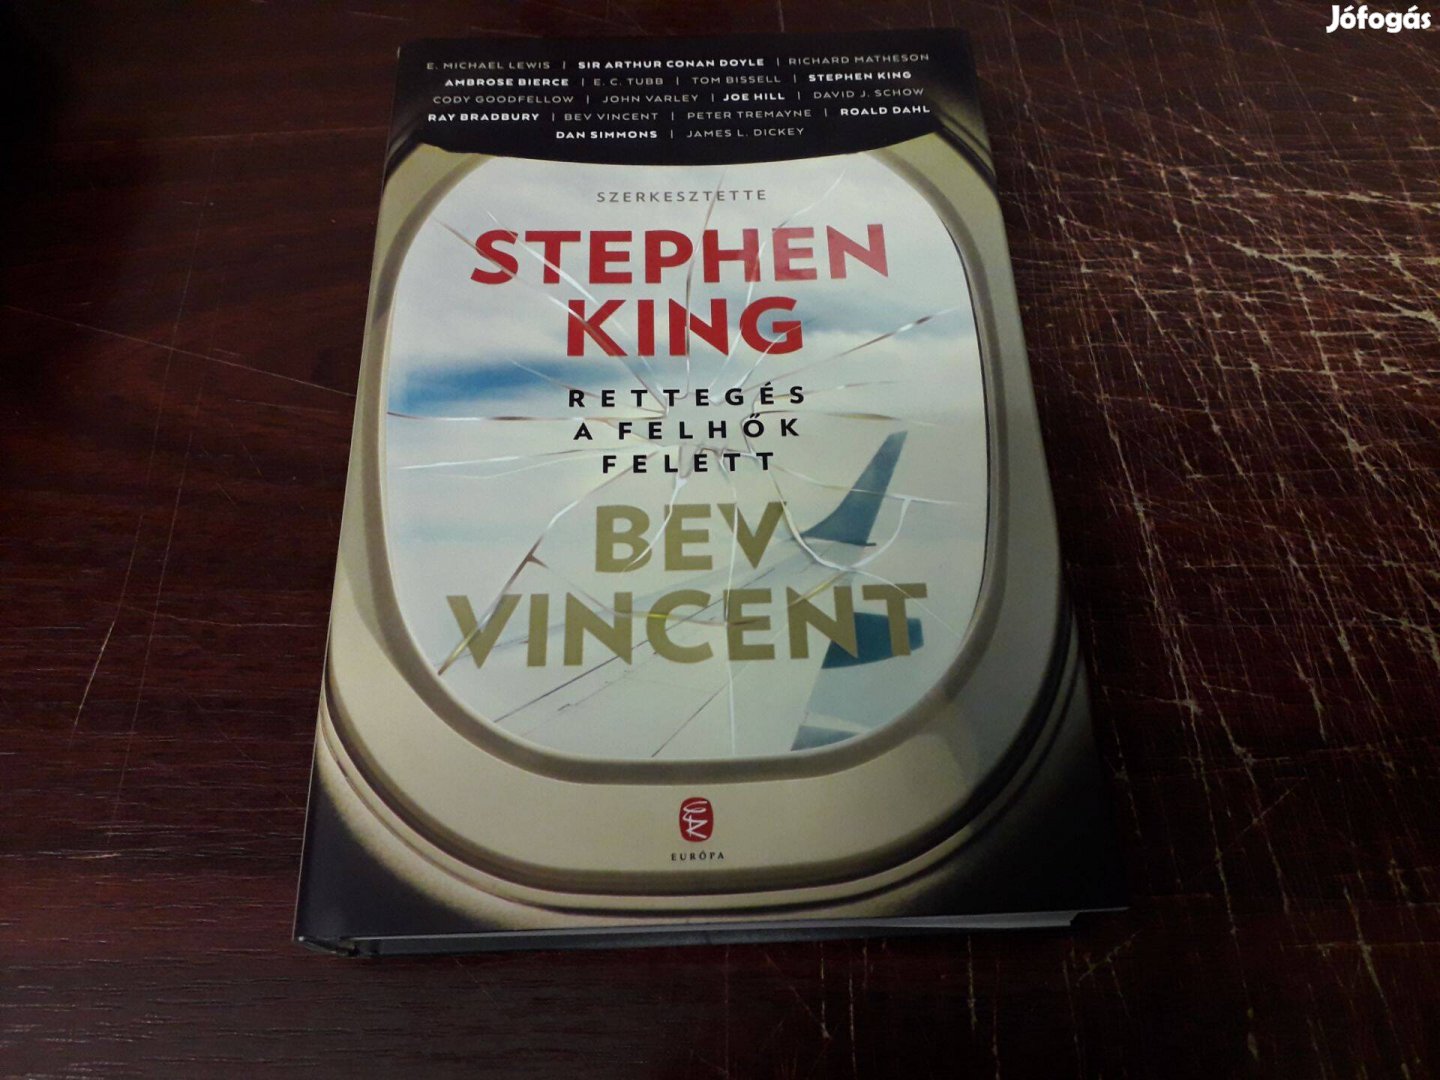 Ben Vincent - Stephen King